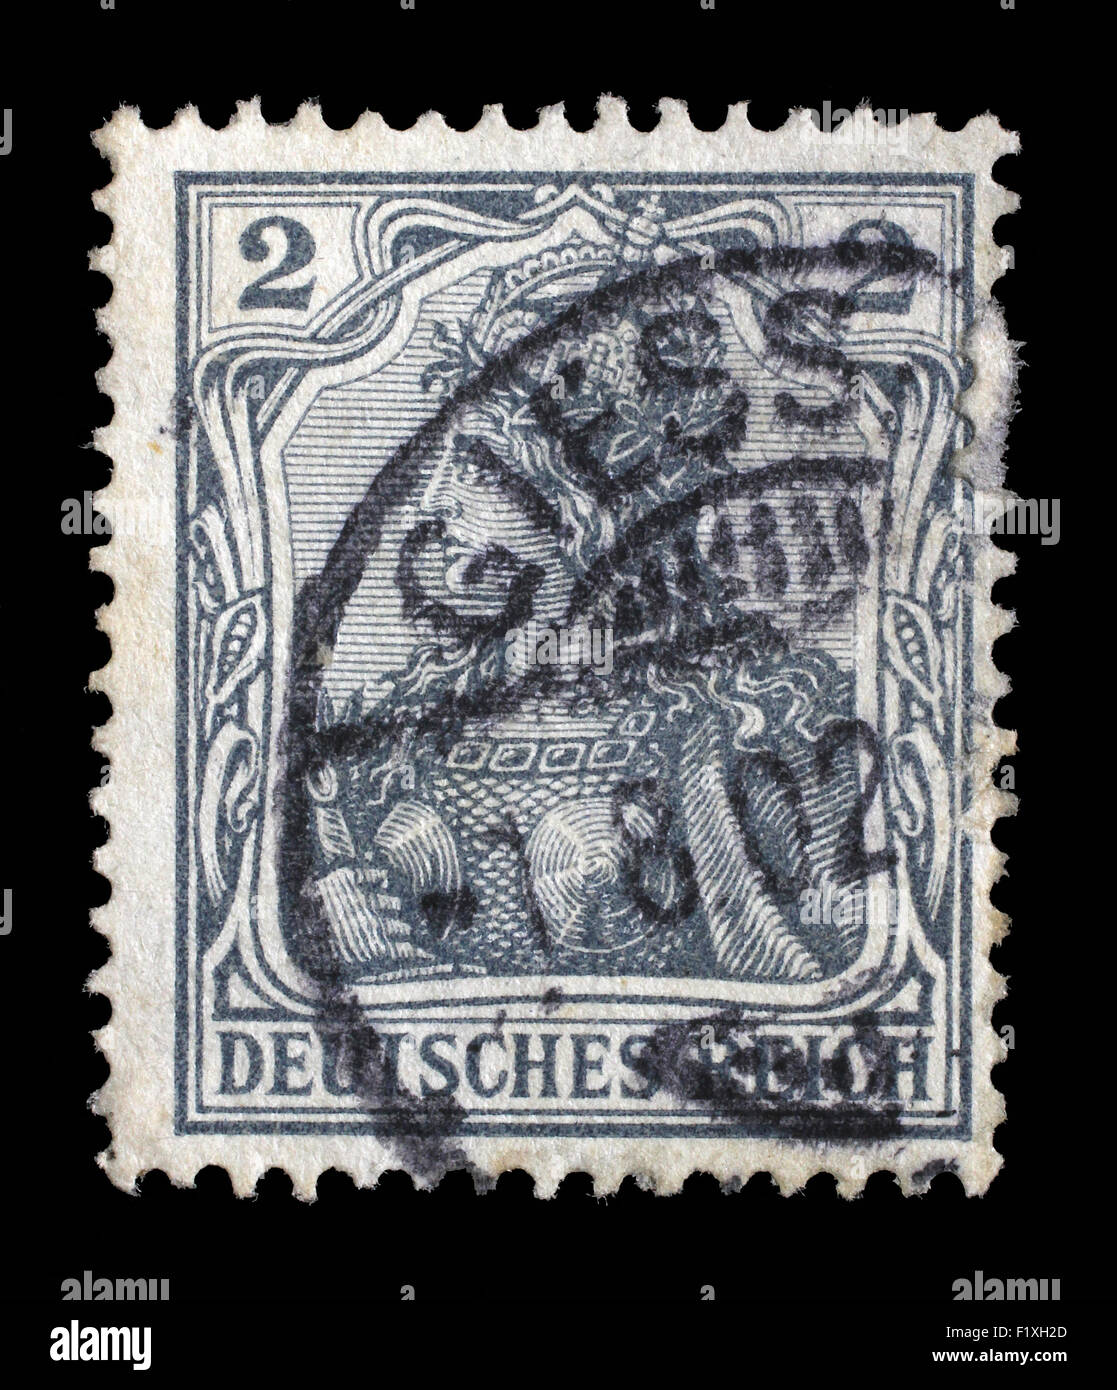 Gedruckt in Deutschland Stempels zeigt Germania (Allegorie, Personifikation von Deutschland), ohne Inschrift, um 1900 Stockfoto